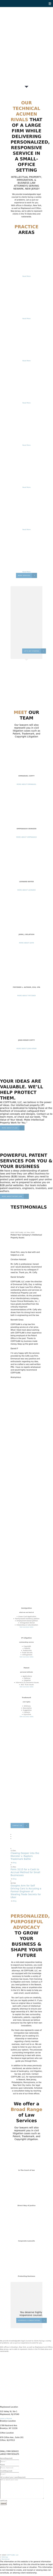 CoffyLaw LLC - Maplewood NJ Lawyers